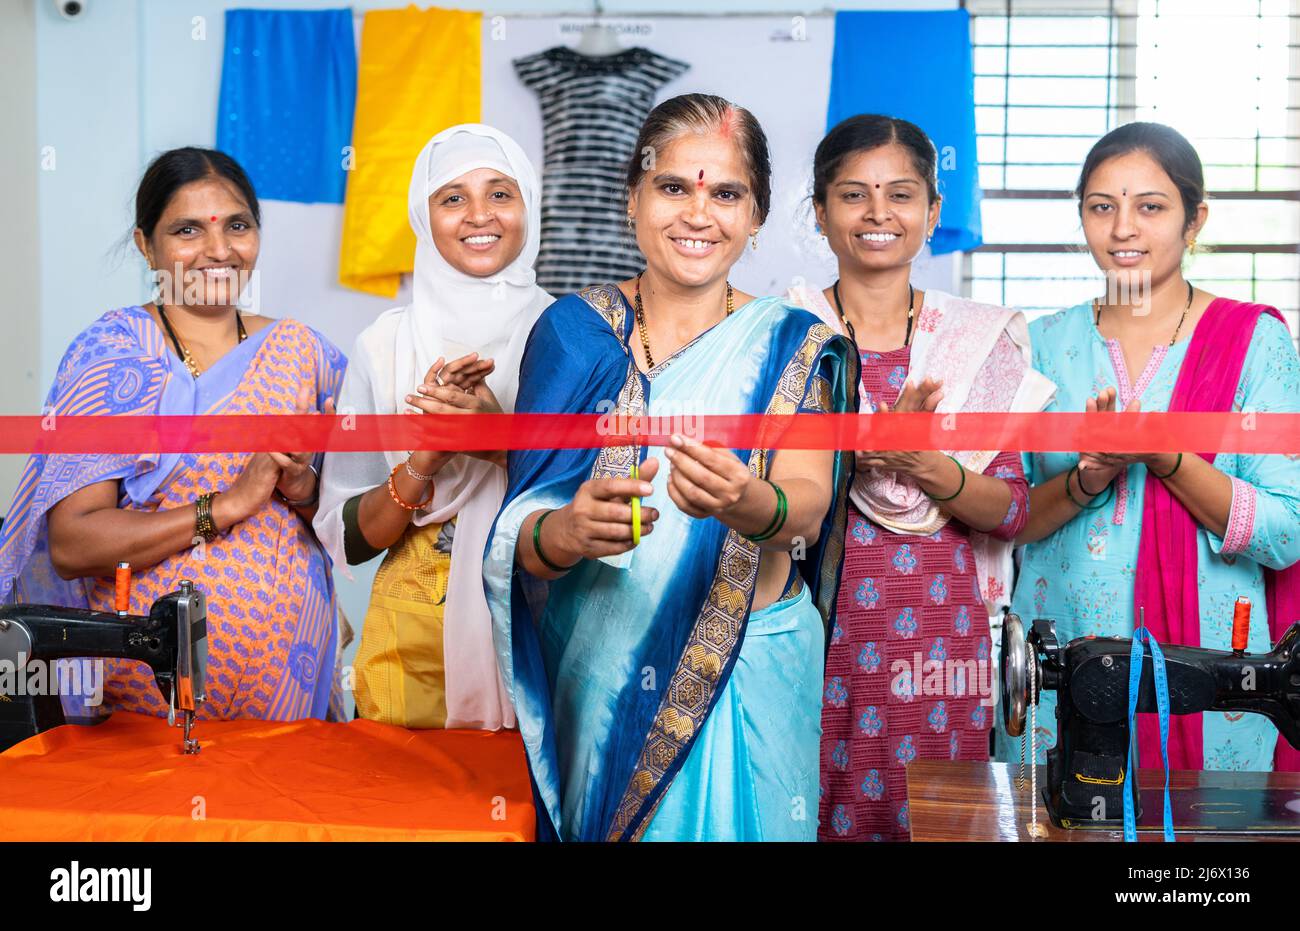 Femme indienne commençant de nouveaux vêtements ou de tailleur petite entreprise par la découpe de ruban tandis que les travailleurs se claquant de derrière - concept d'inspiration Banque D'Images